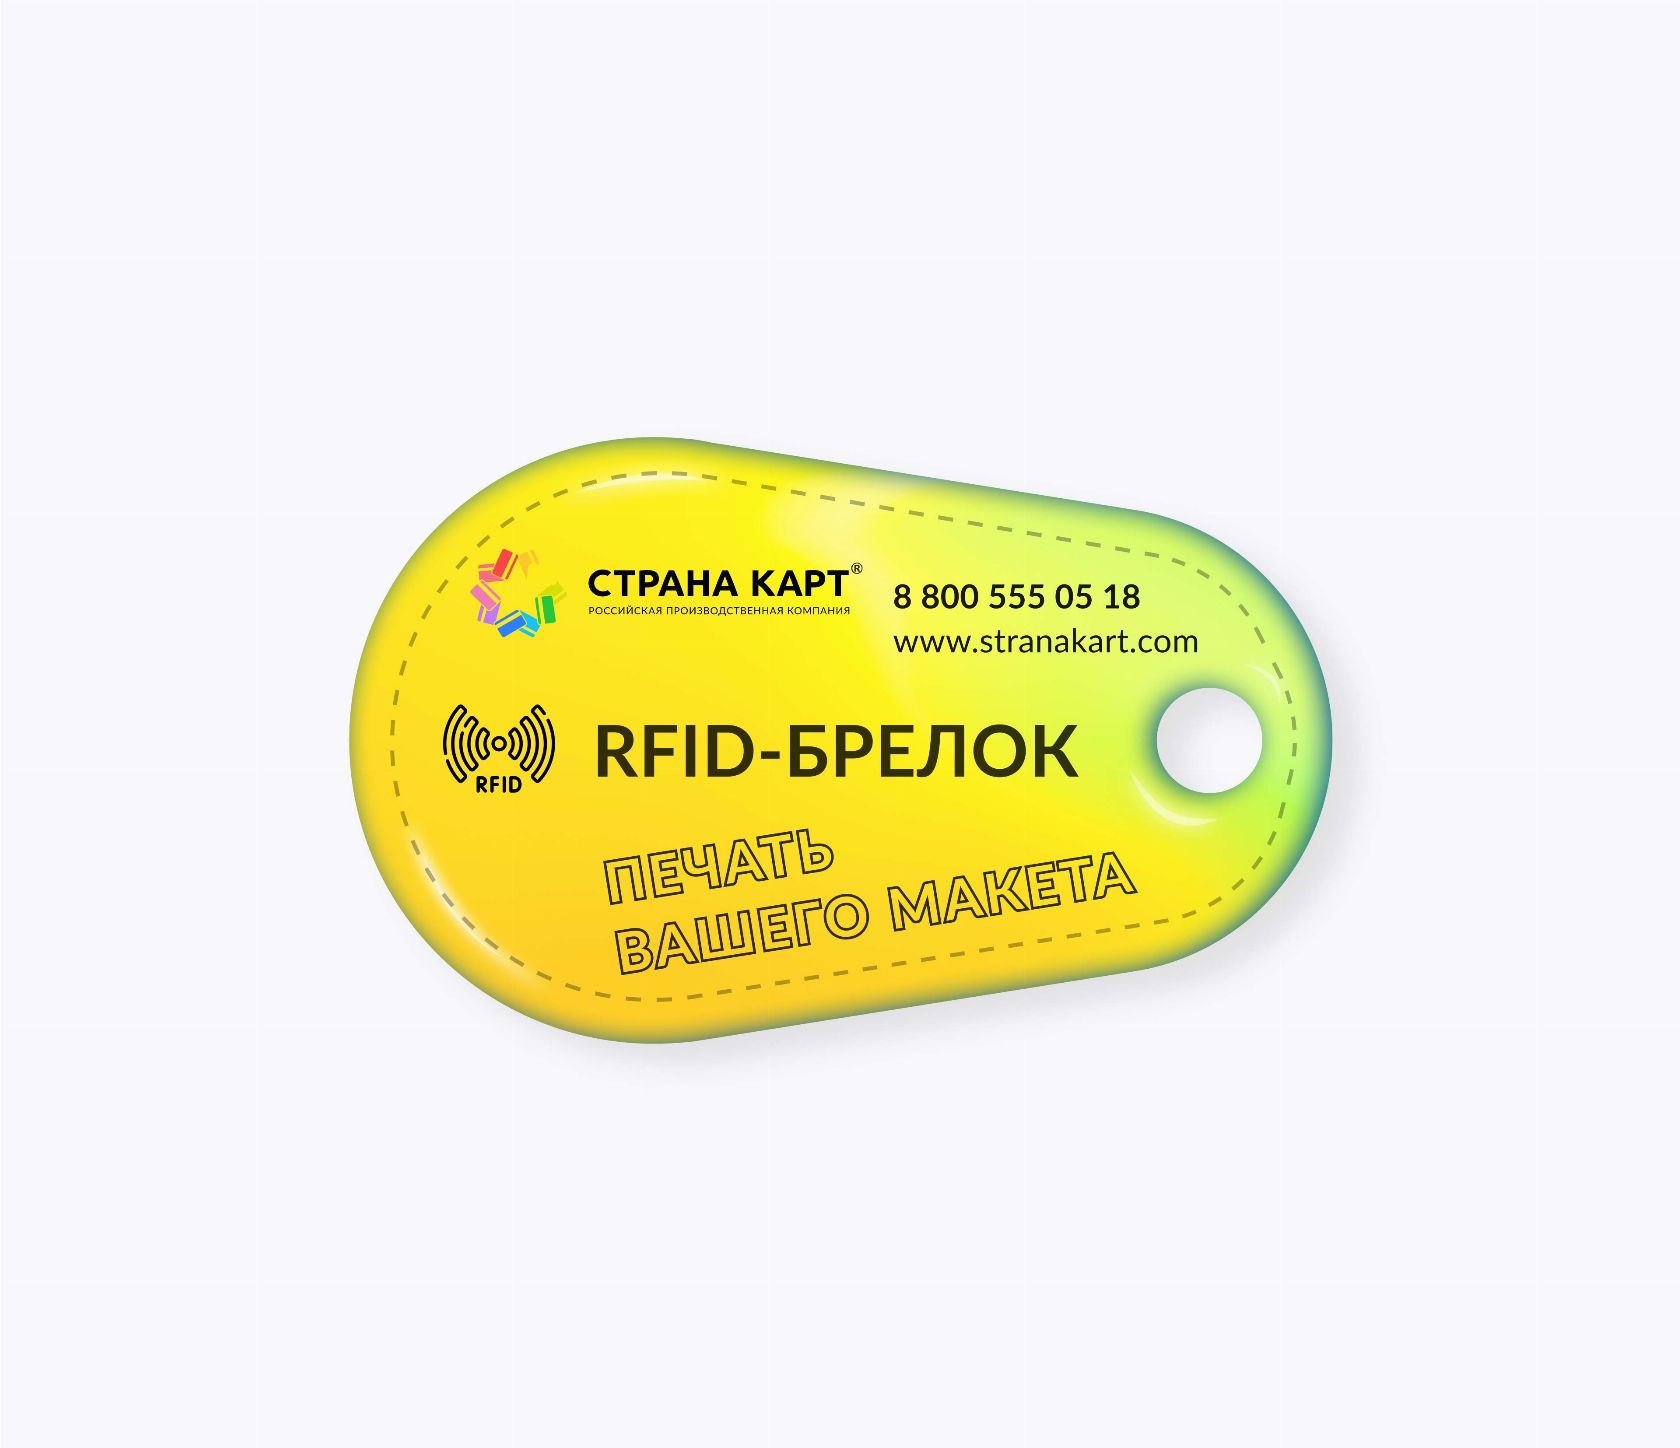 Каплевидные RFID-брелоки NEOKEY® с чипом NXP MIFARE Plus S 2k 7 byte UID RFID-брелоки NEOKEY® с чипом NXP MIFARE Plus S 2k 7 byte UID и вашим логотипом